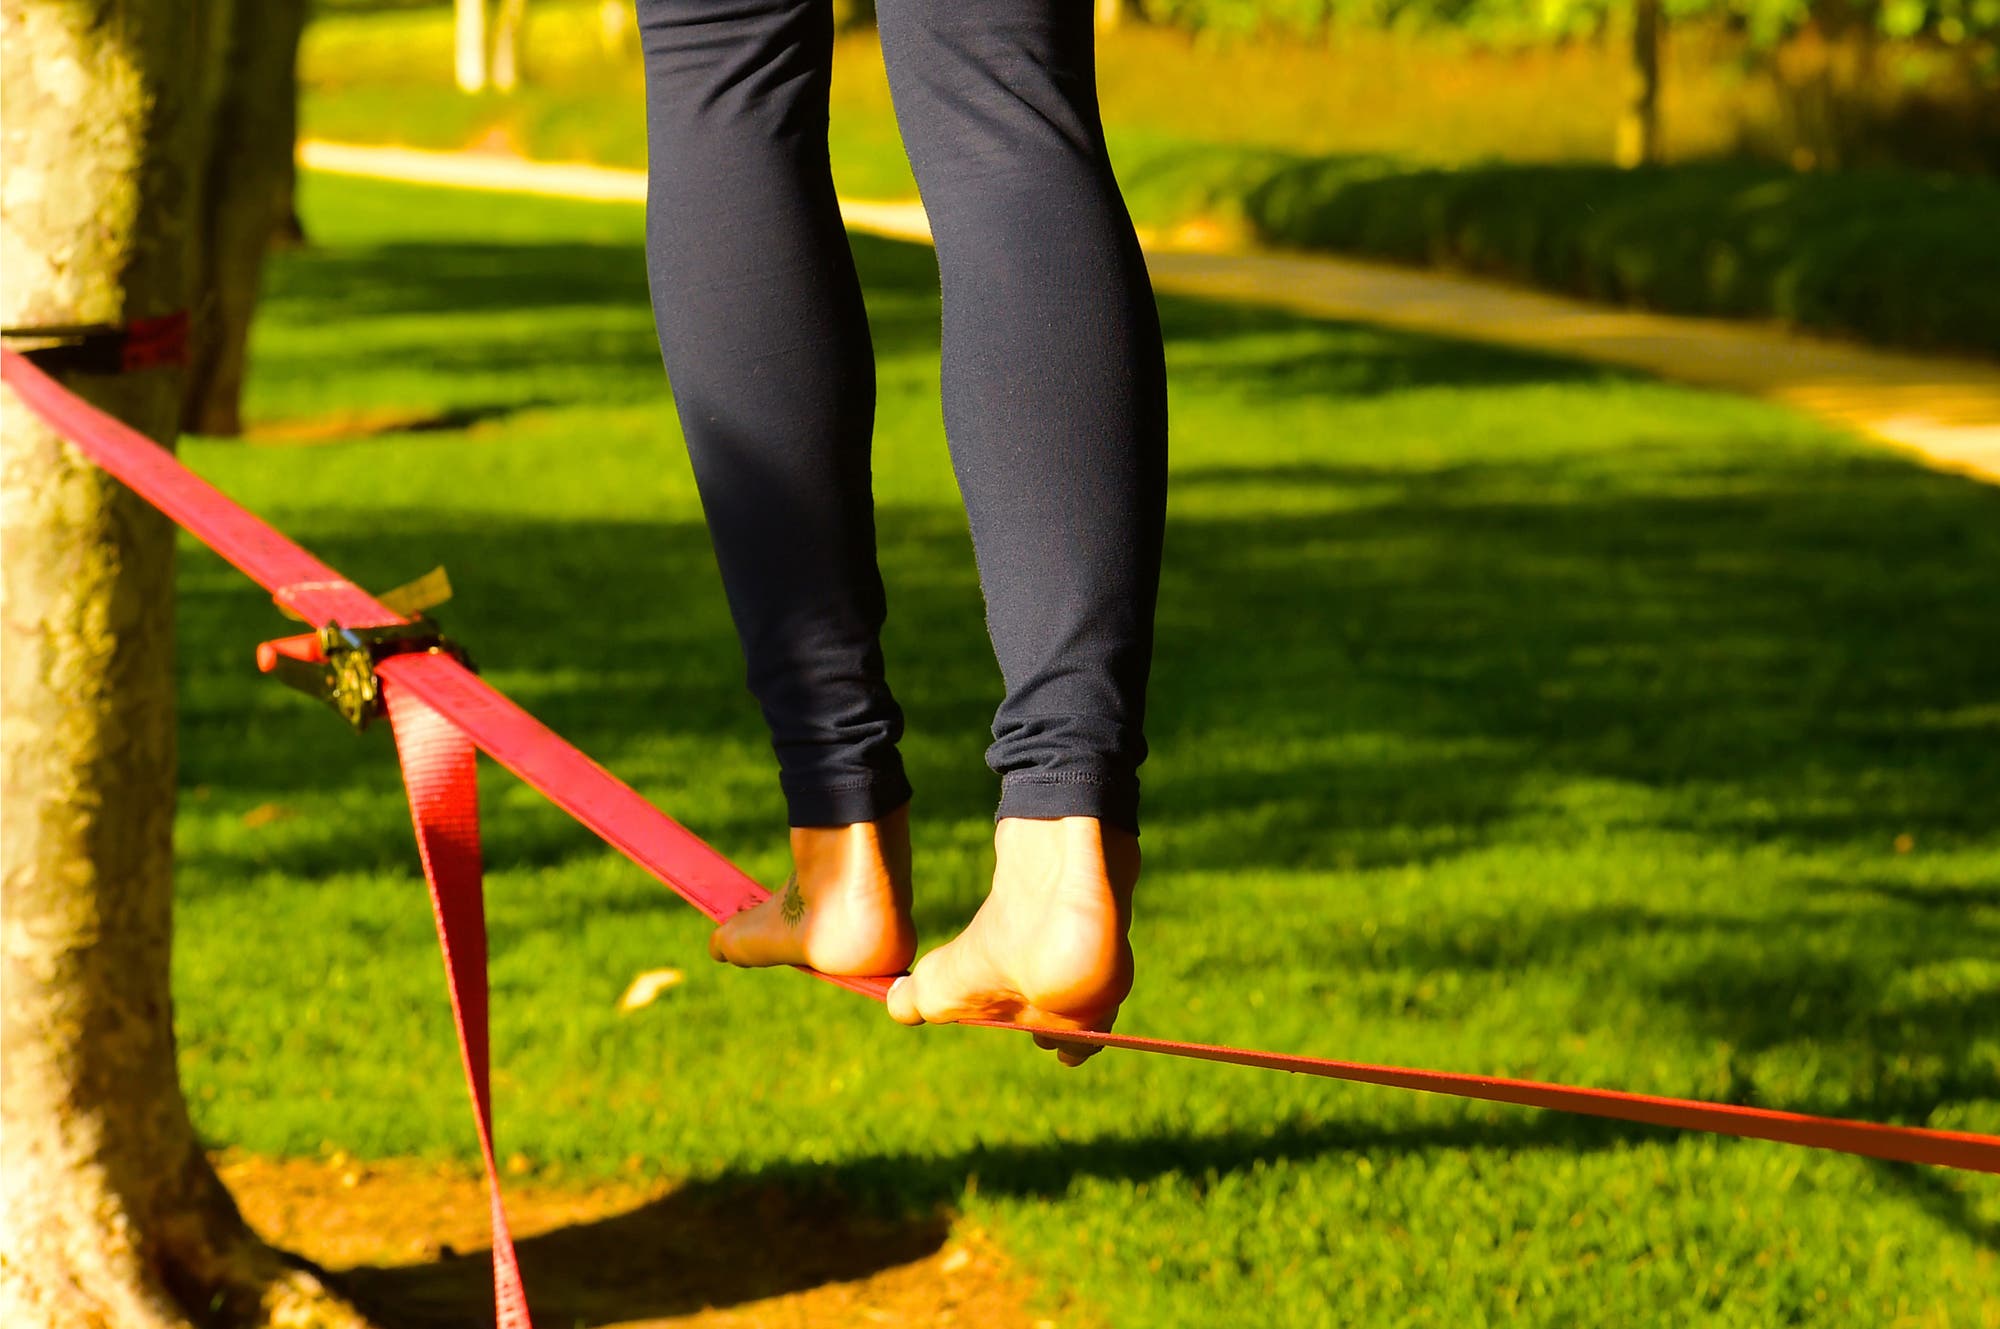 Nackte Füße balancieren auf einem Seil im Park